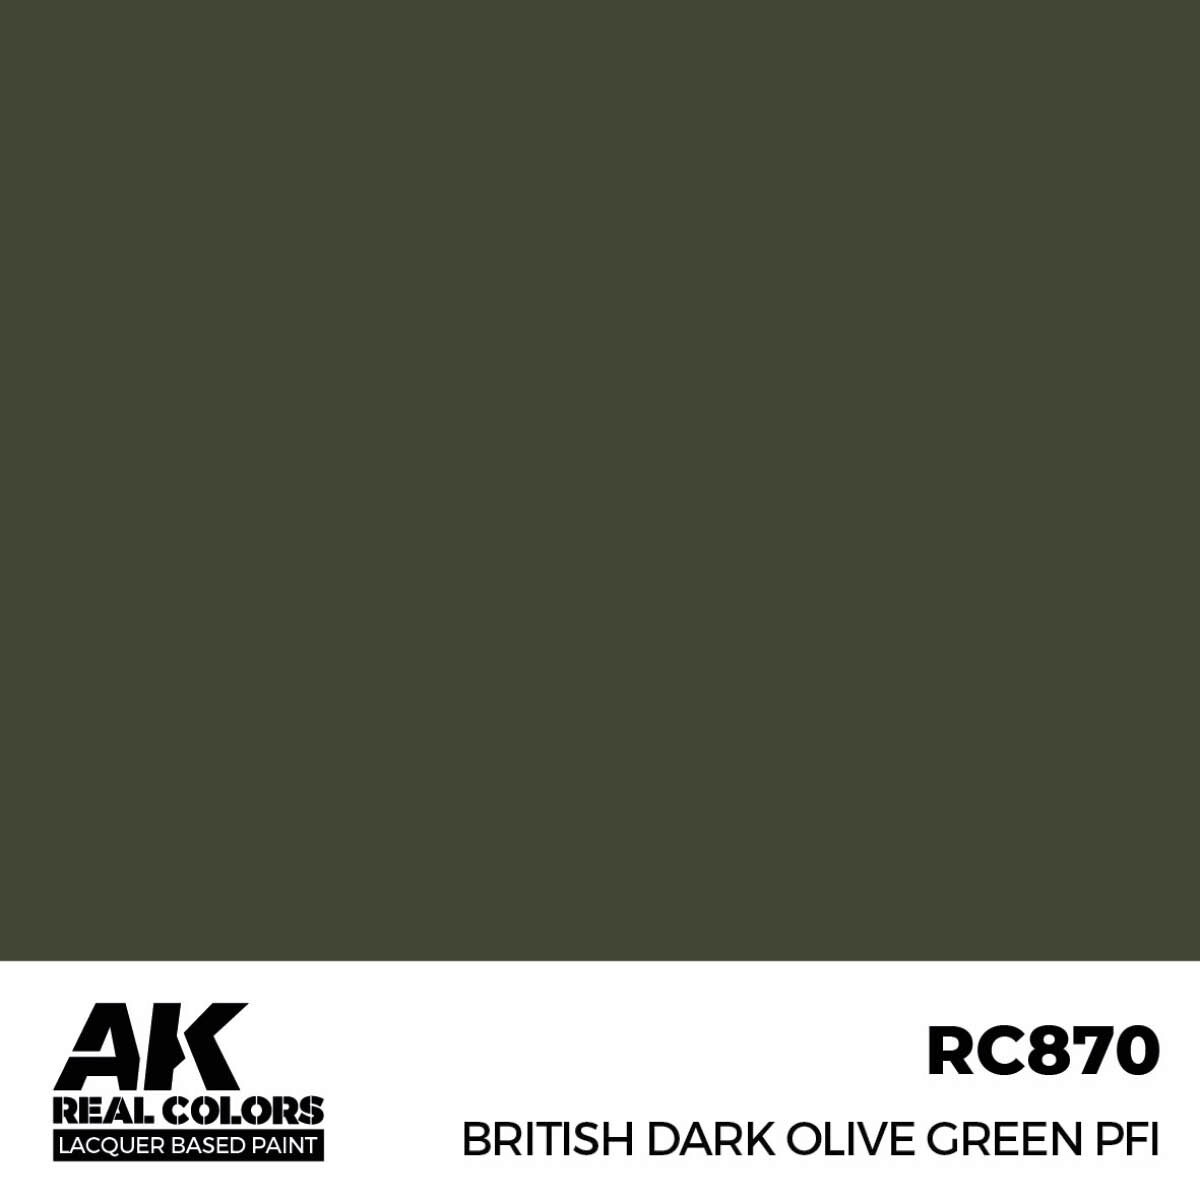 AK RC870 Real Colors British Dark Olive Green PFI 17 ml.